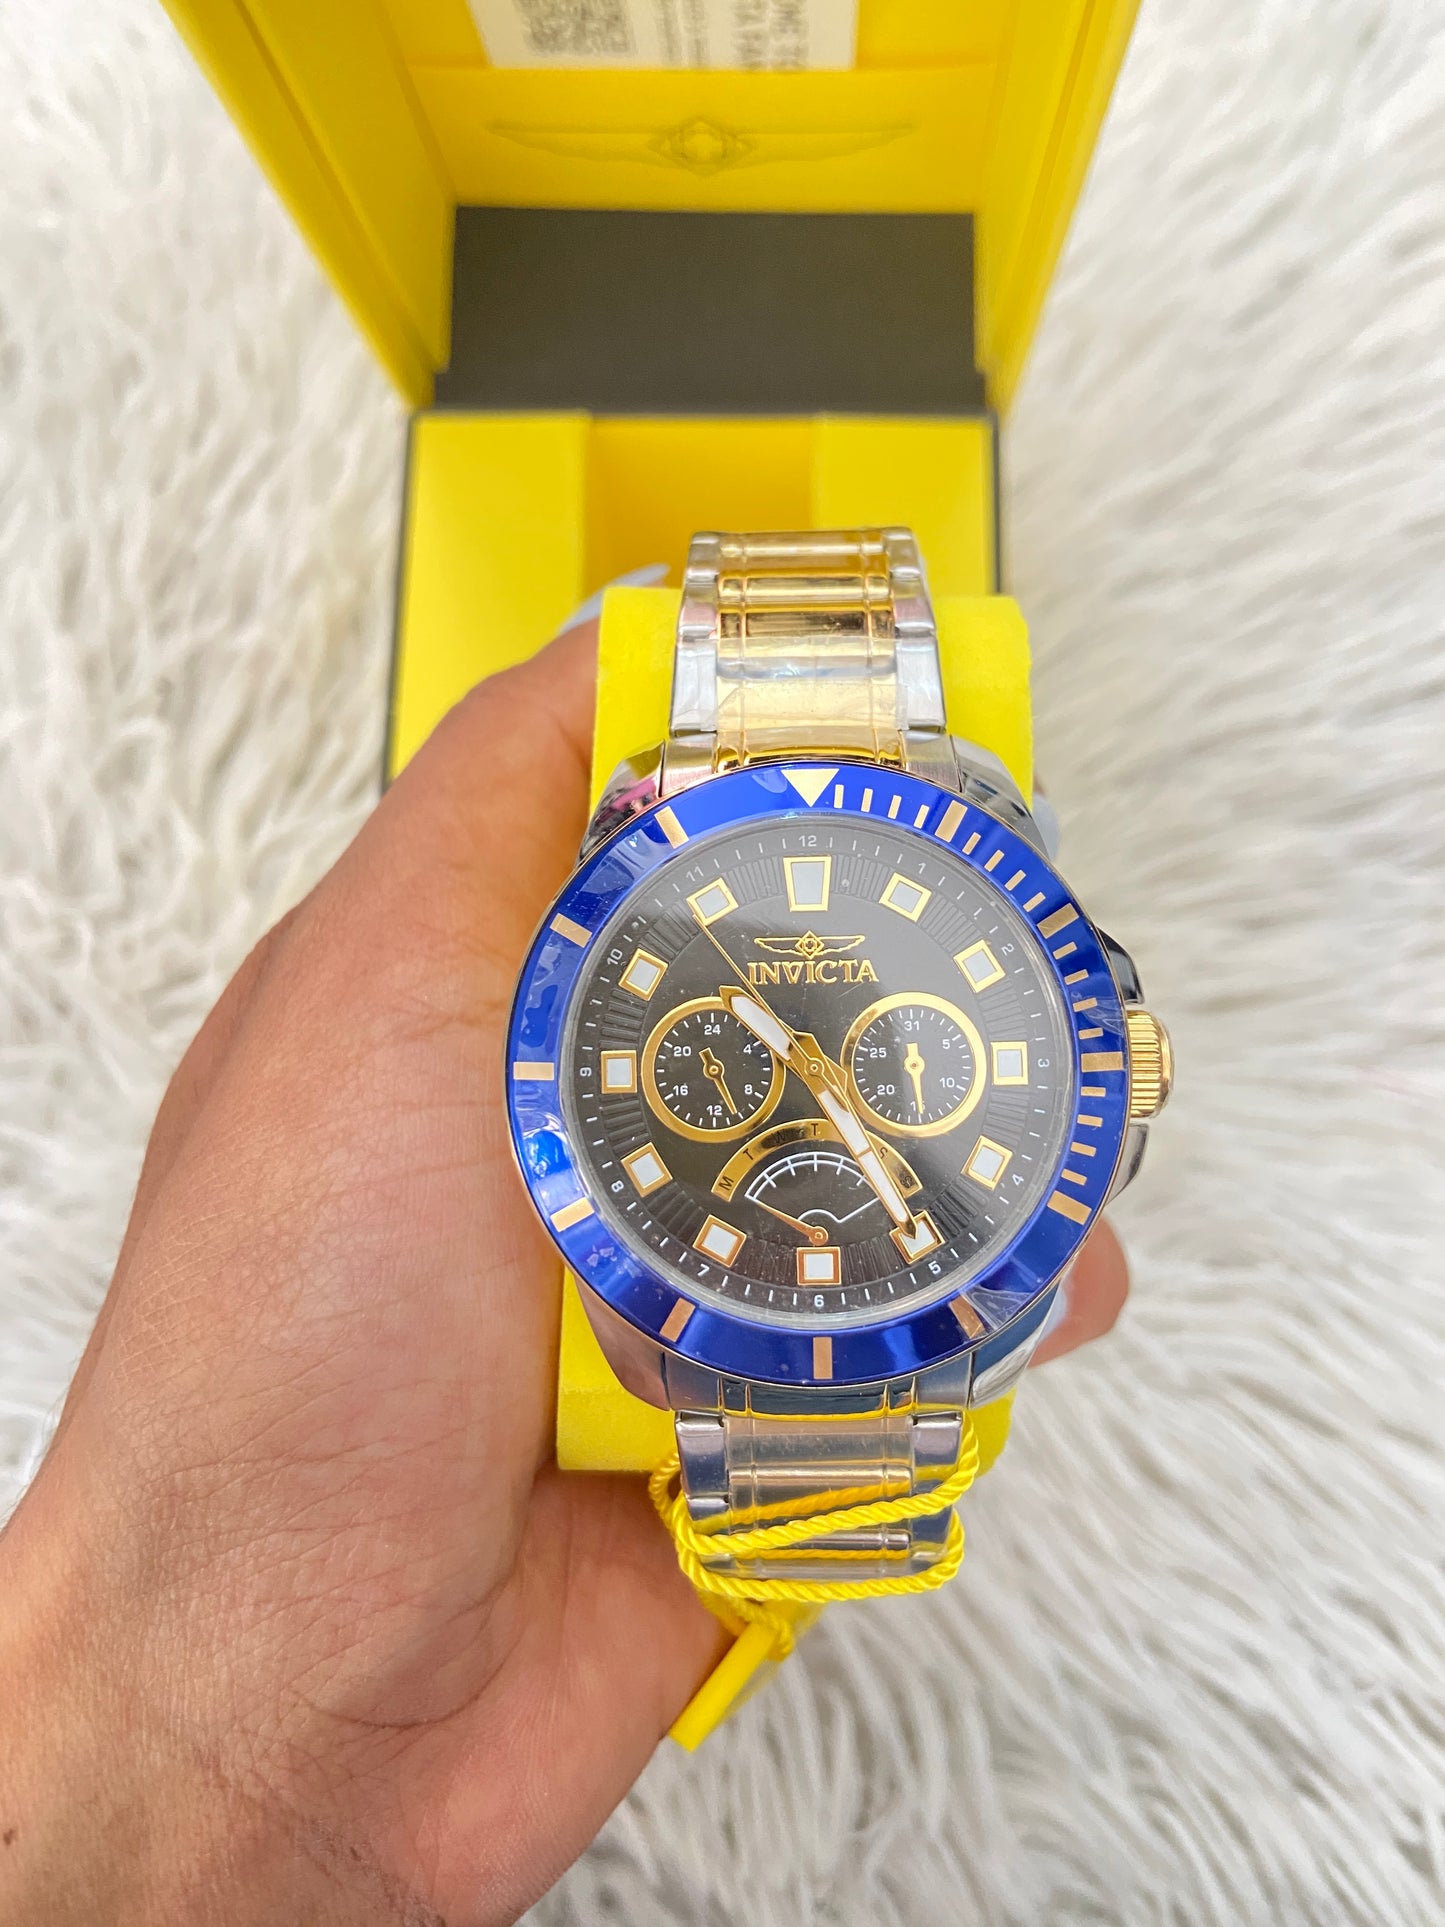 Reloj INVICTA original plateado con dorado y detalles azul en frente.